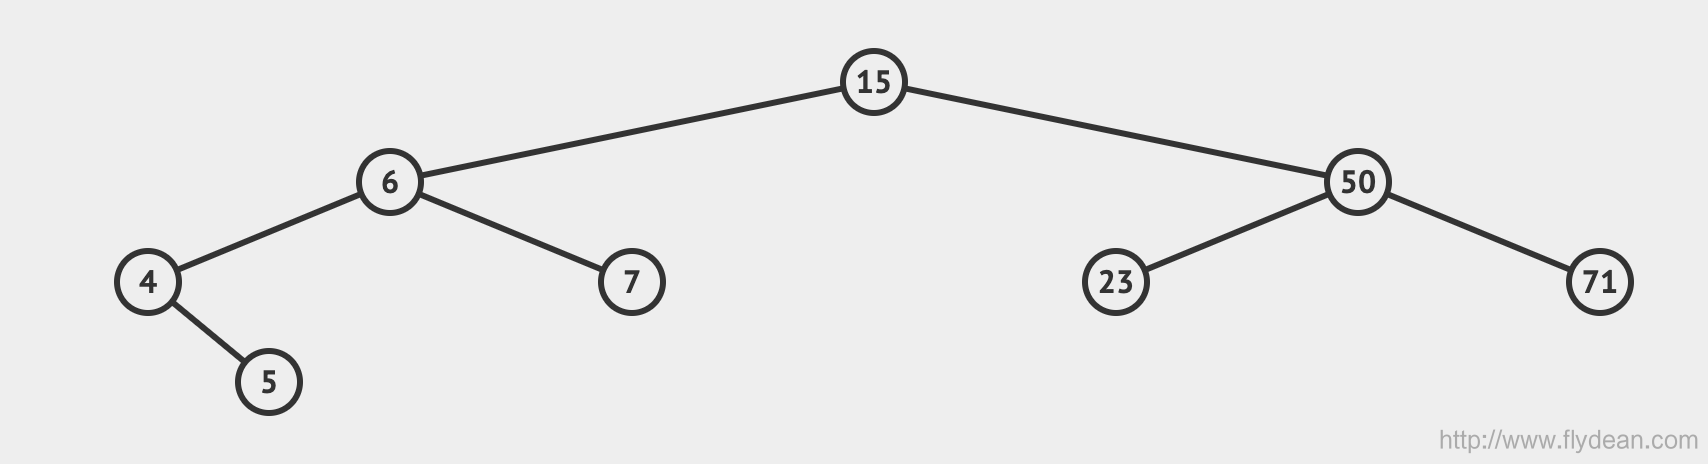 看动画学算法之:平衡二叉搜索树AVL Tree